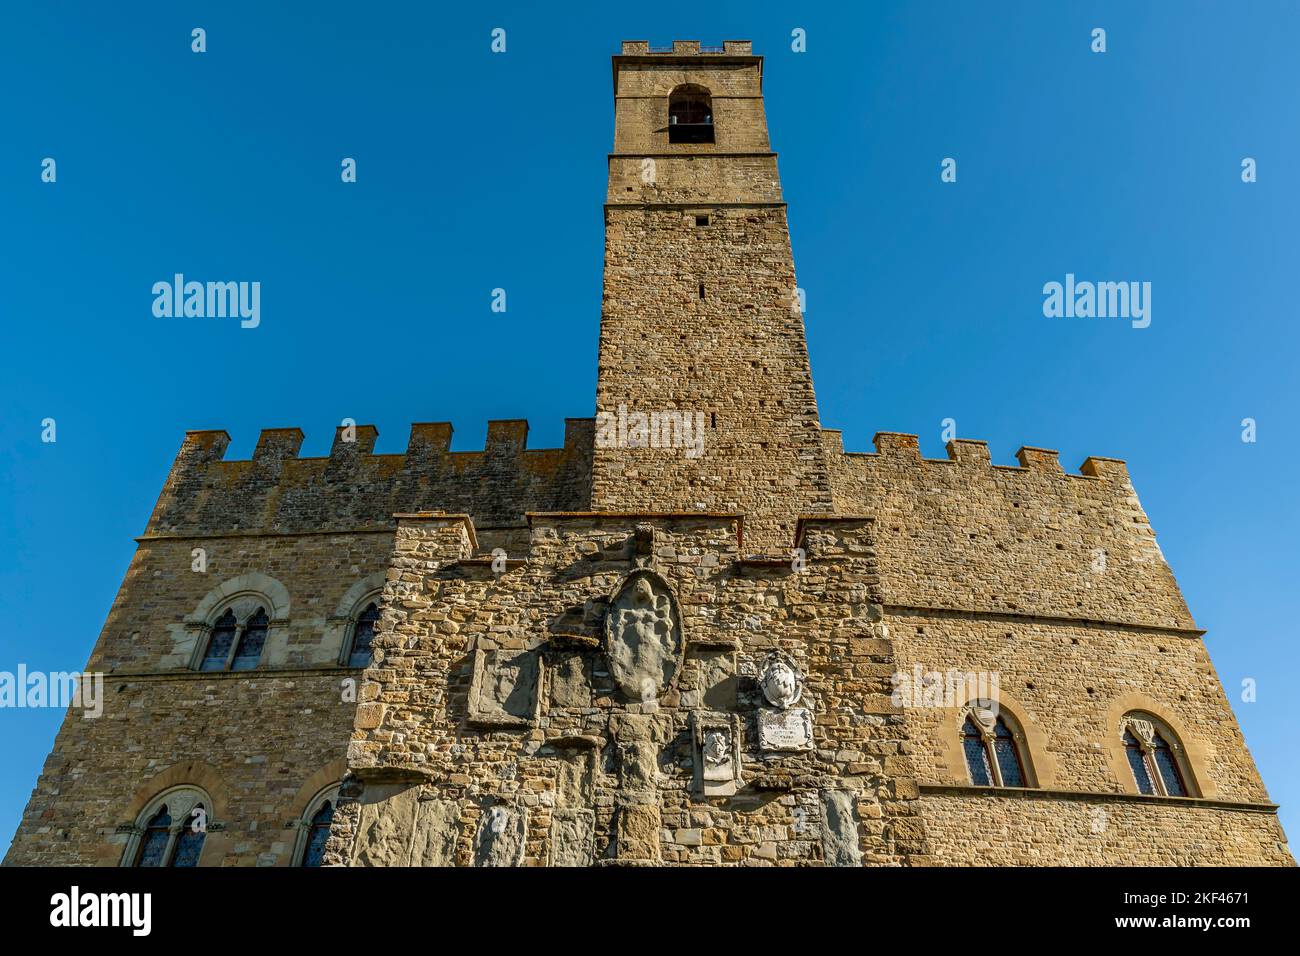 The ancient castle of the Conti Guidi in the historic center of Poppi, Arezzo, Italy Stock Photo